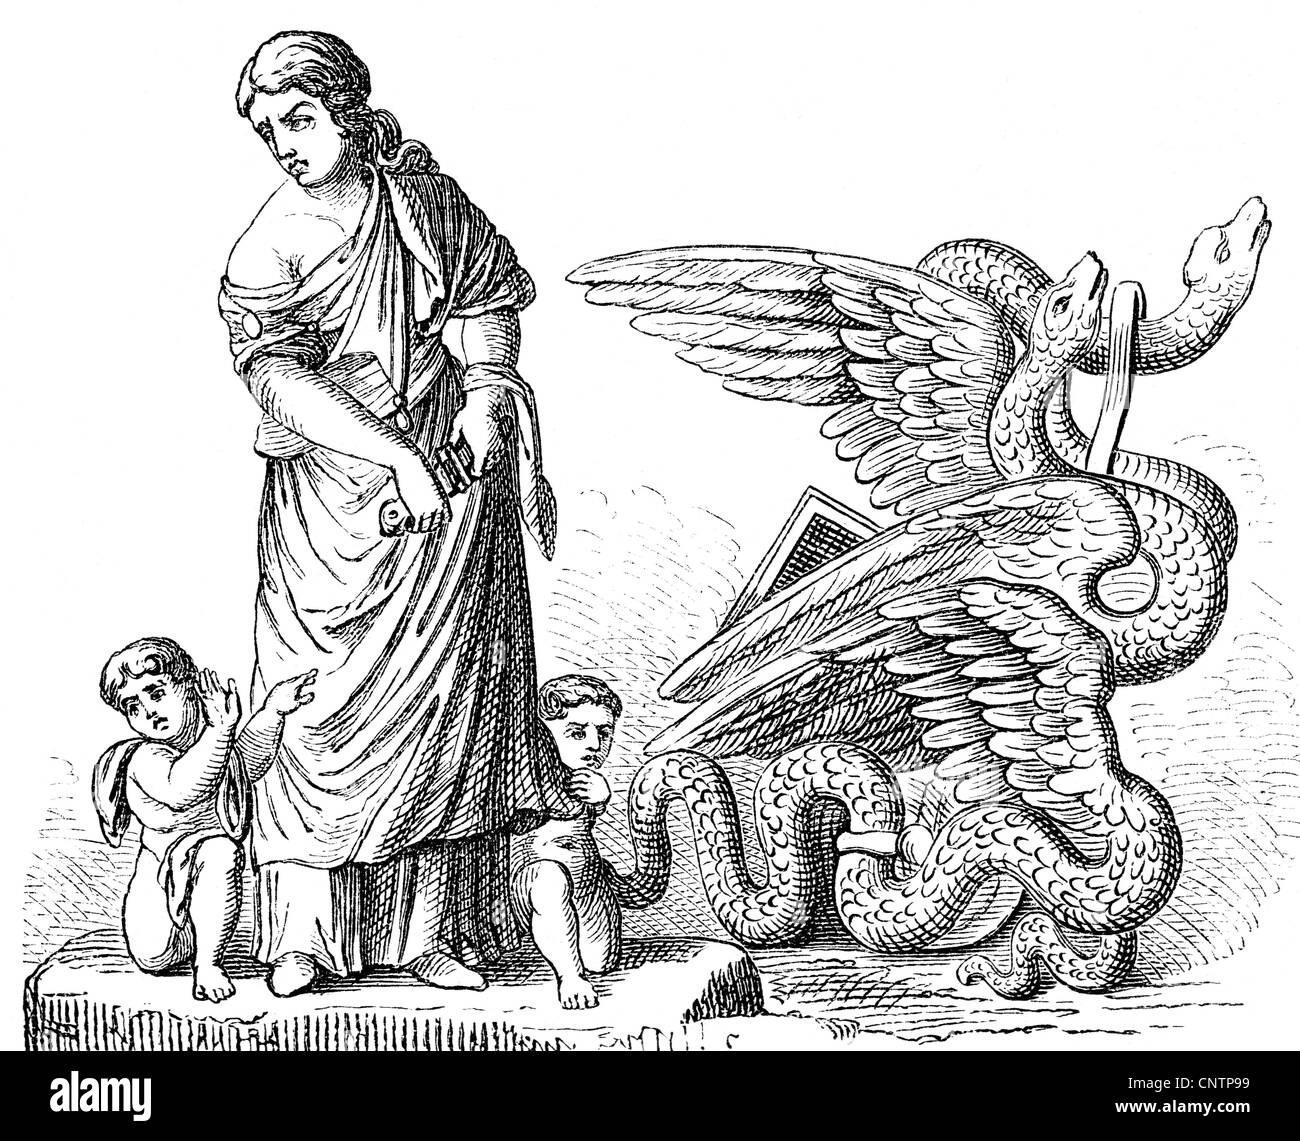 MEDEA, figure mythique grecque, épouse de Jason, pleine longueur, avec ses enfants elle est sur le point de tuer, dessiner, XIXe siècle, après une illustration ancienne de Timomachus, Banque D'Images